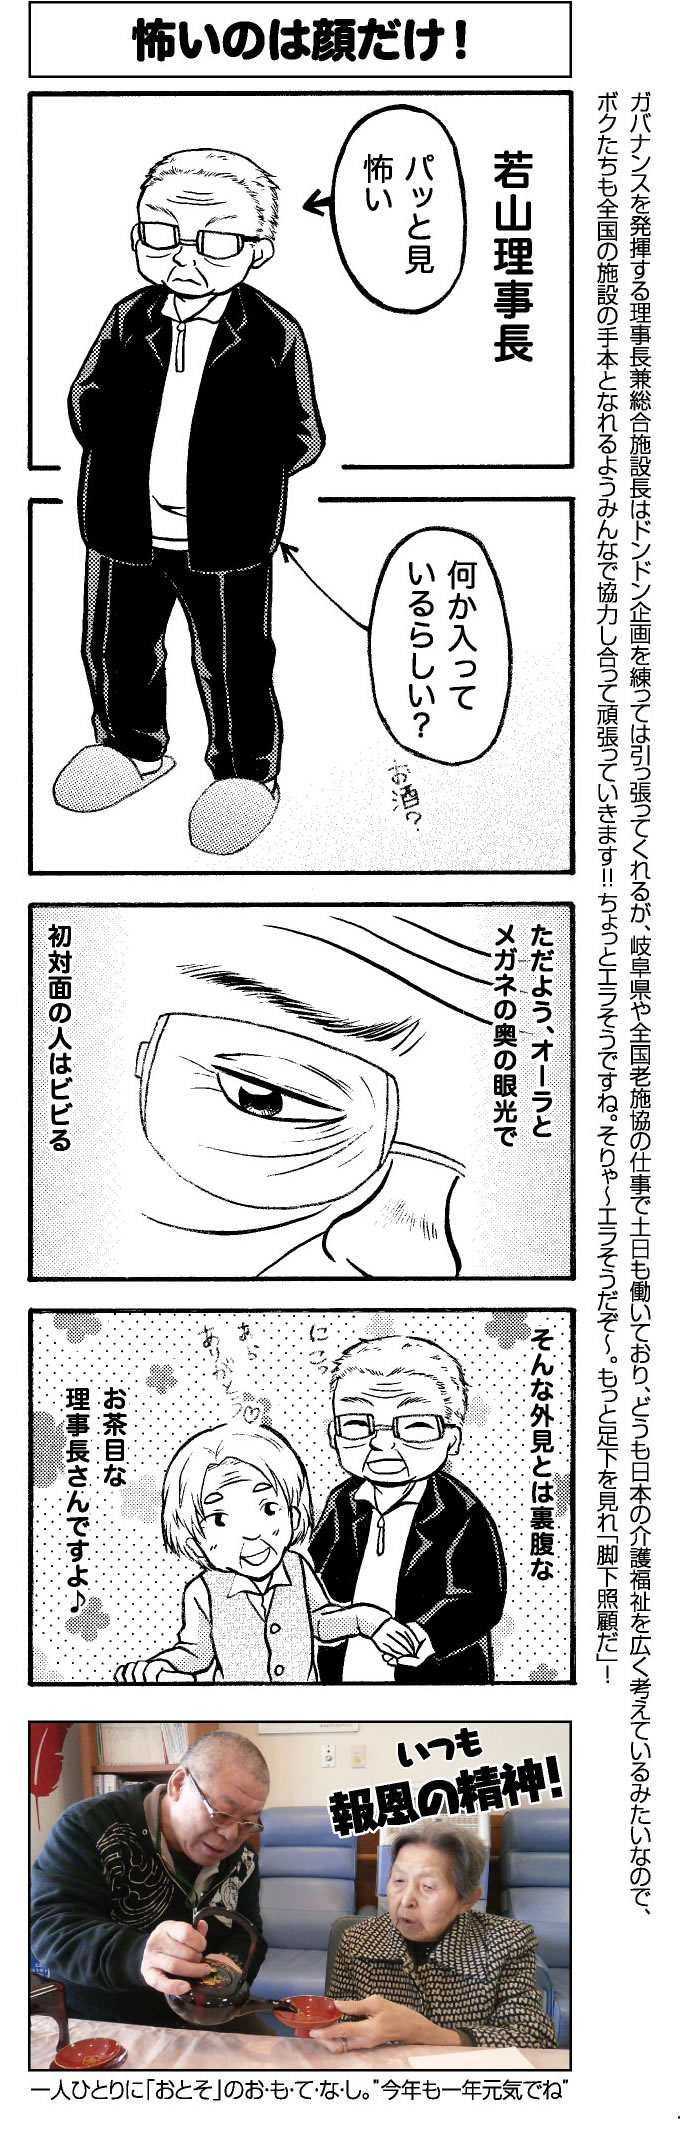 manga11